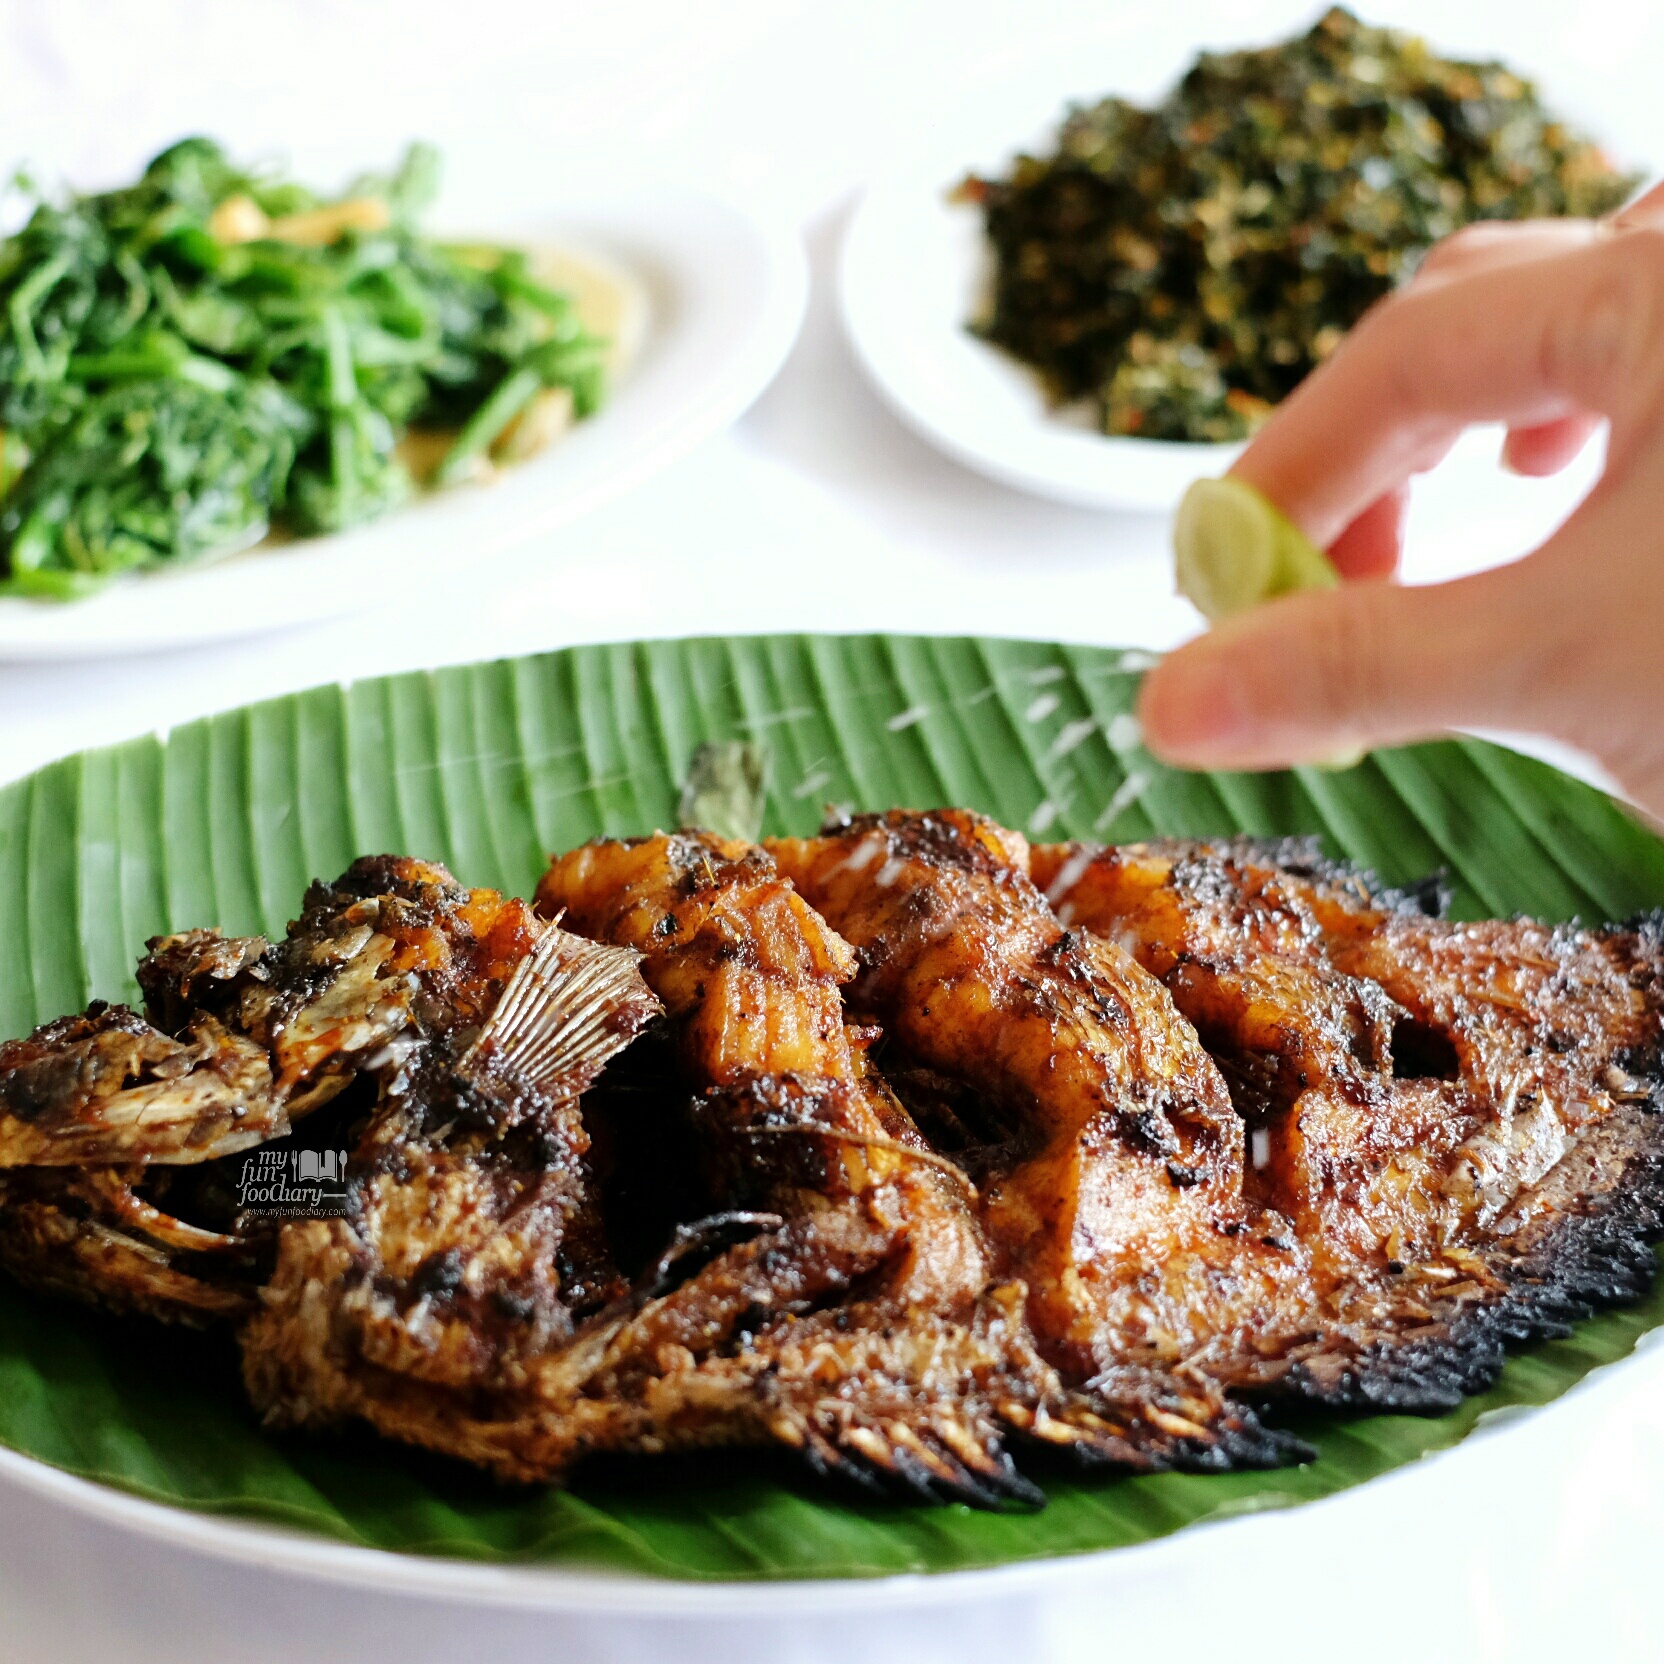 Gurame Kecap at Layar Seafood Jakarta by Myfunfoodiary 01